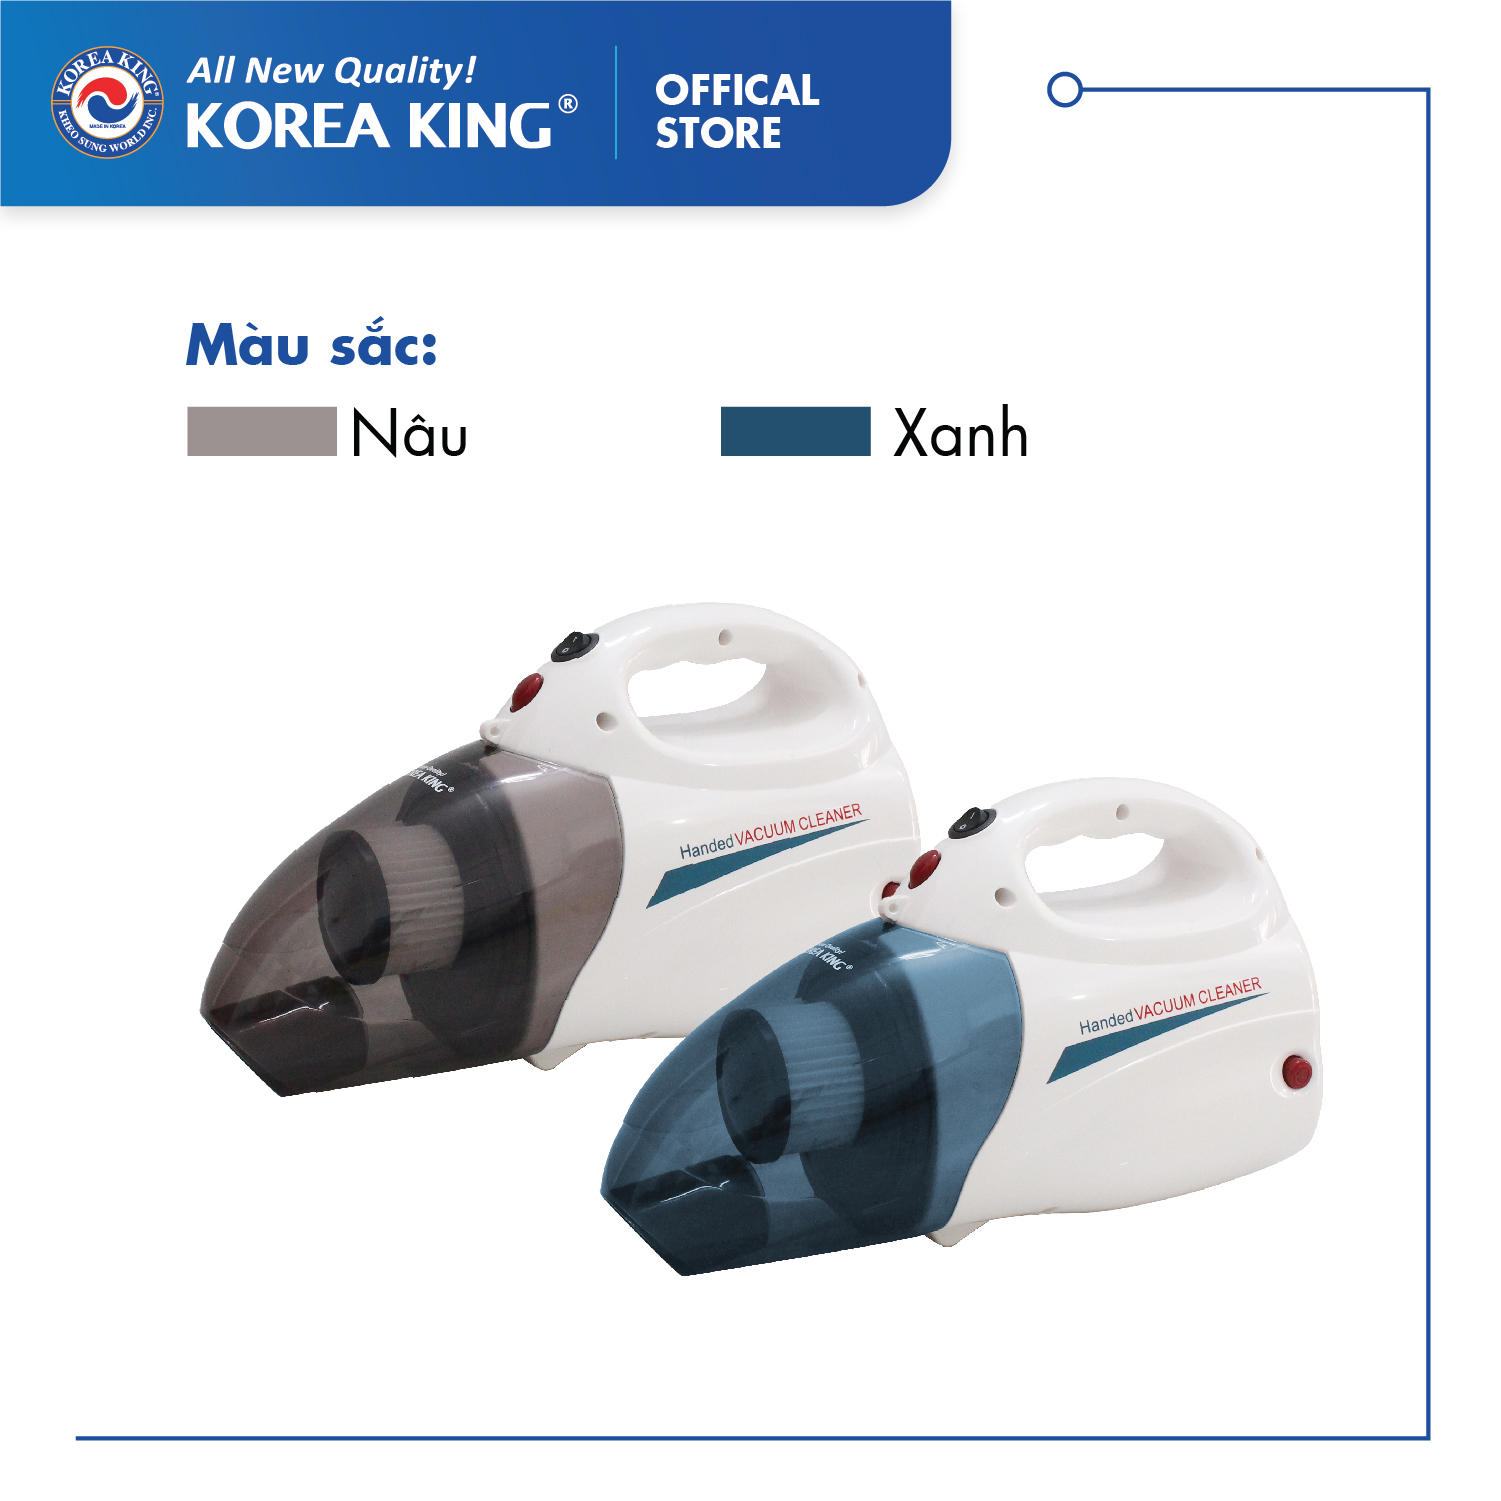 Máy hút bụi cầm tay Korea King PDG-666 (220v/50Hz,1000W, màu nâu trắng, 2 chức năng hút thổi) - Hàng chính hãng